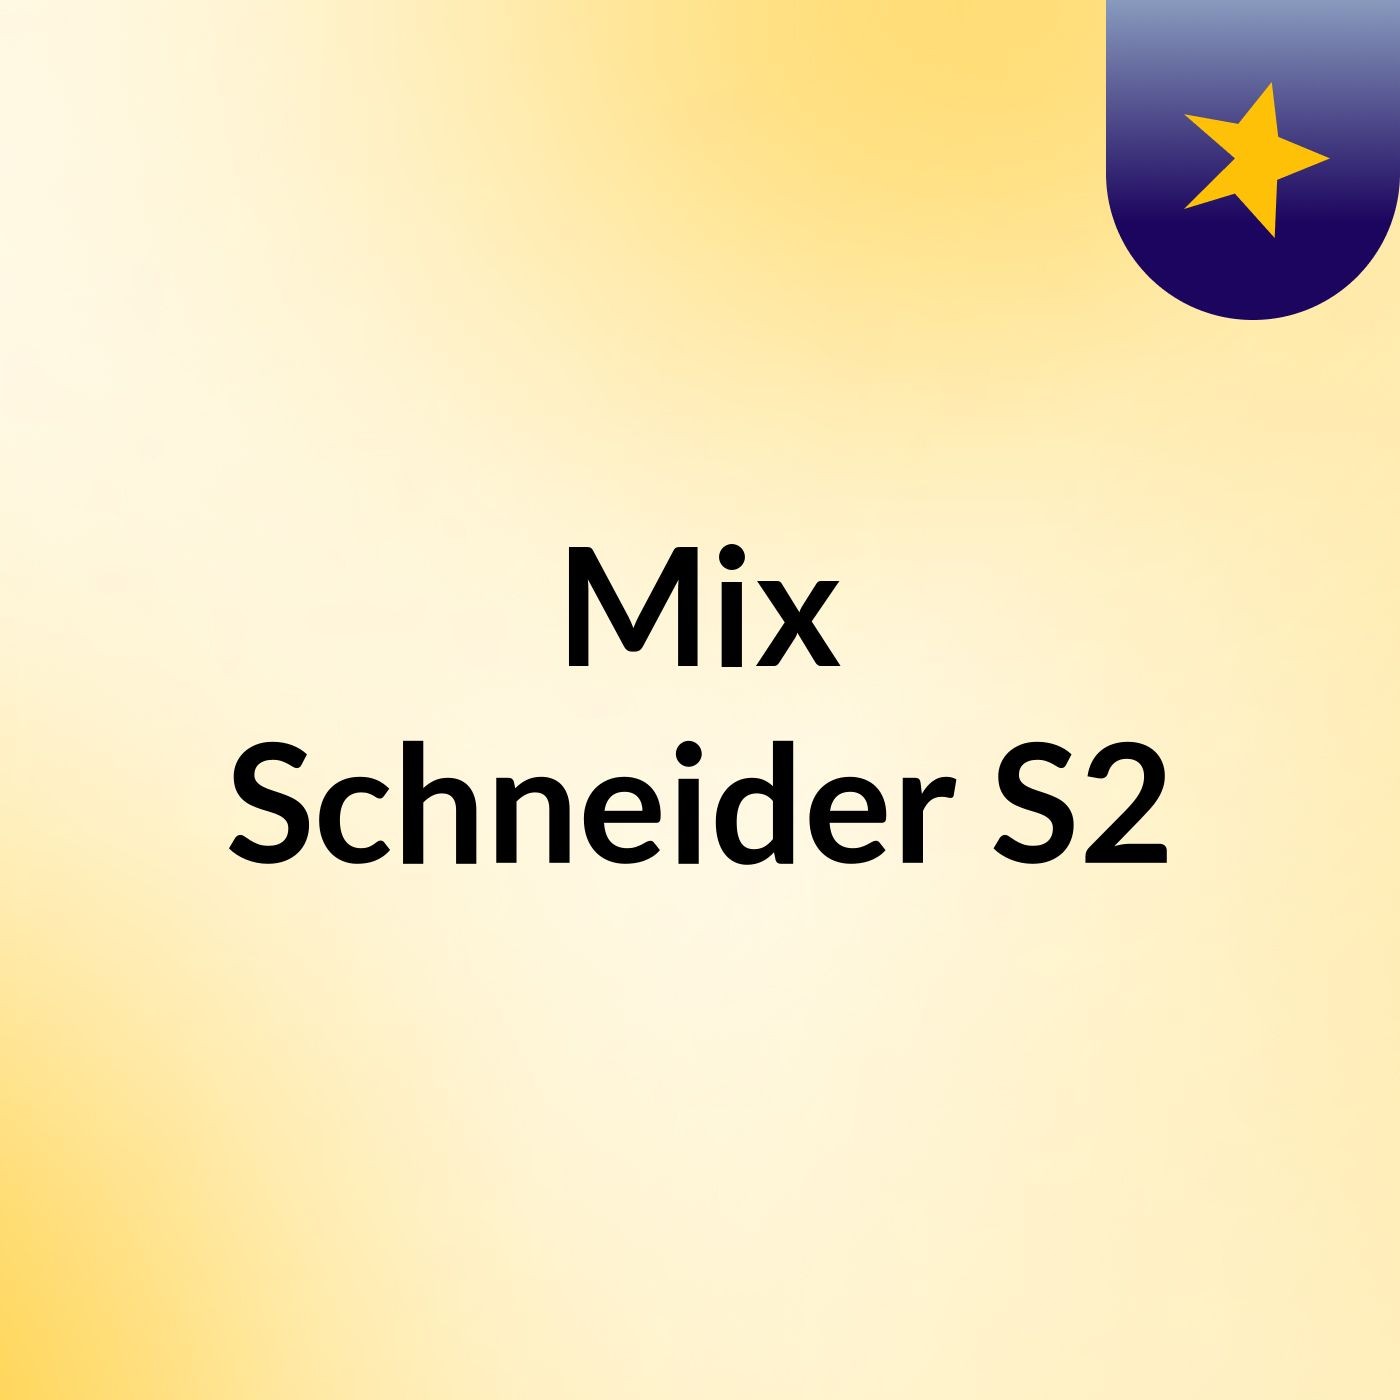 Mix Schneider S2